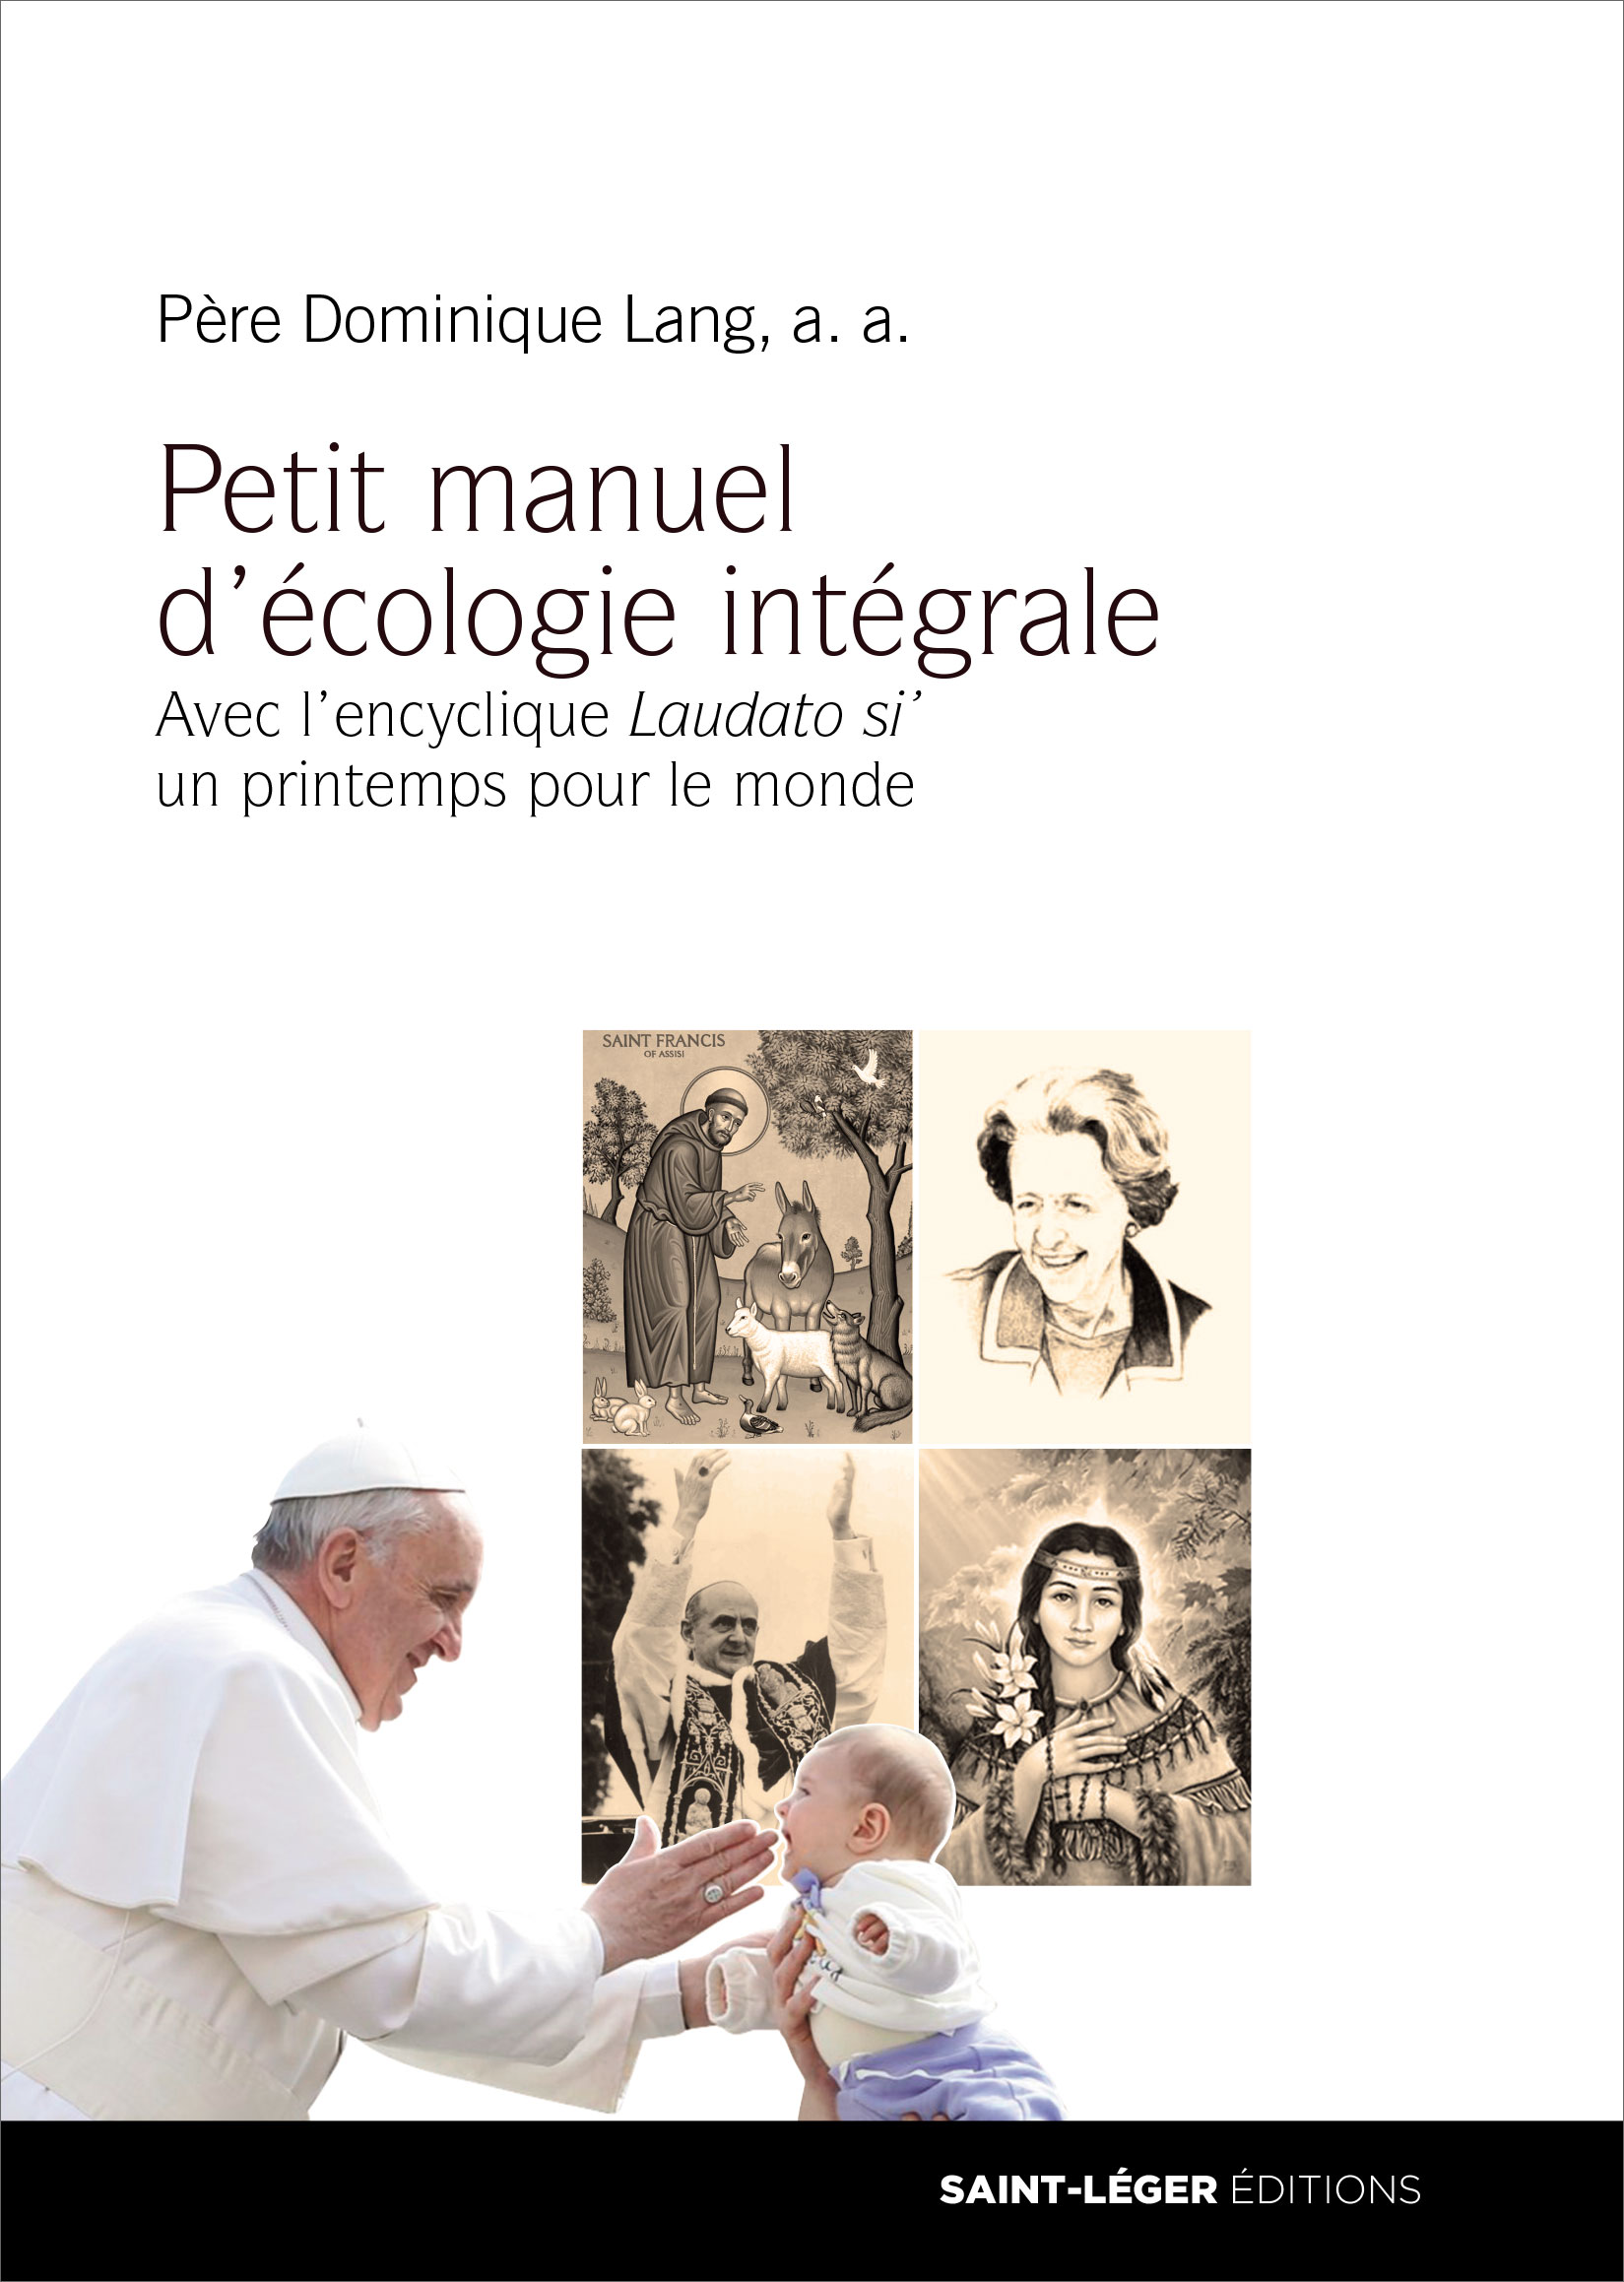 Pre Dominique Lang, Petit manuel d'cologie intgrale